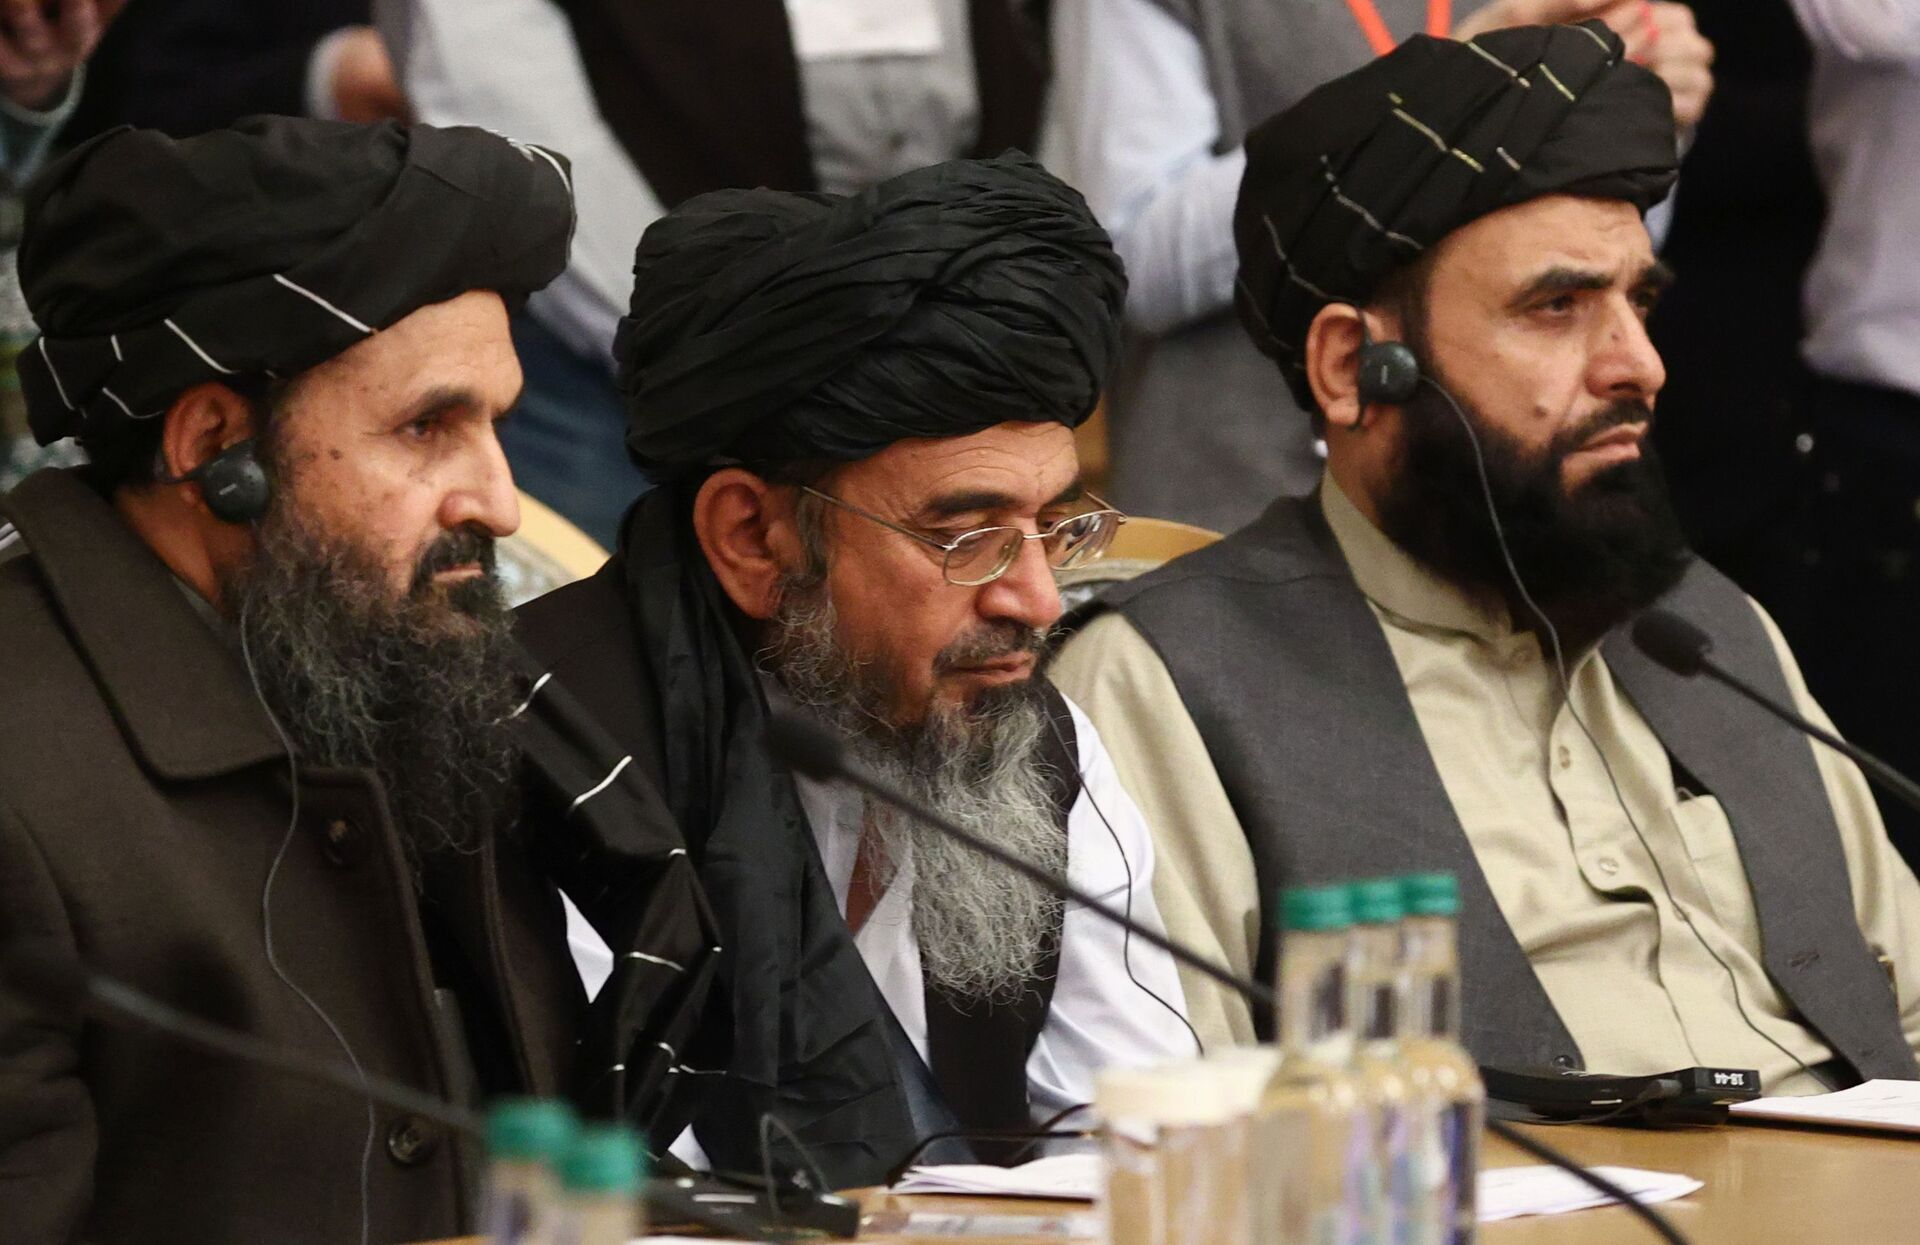 Como as incertezas dos EUA sobre acordo com Talibã influenciam o processo de paz no Afeganistão? - Sputnik Brasil, 1920, 20.06.2021